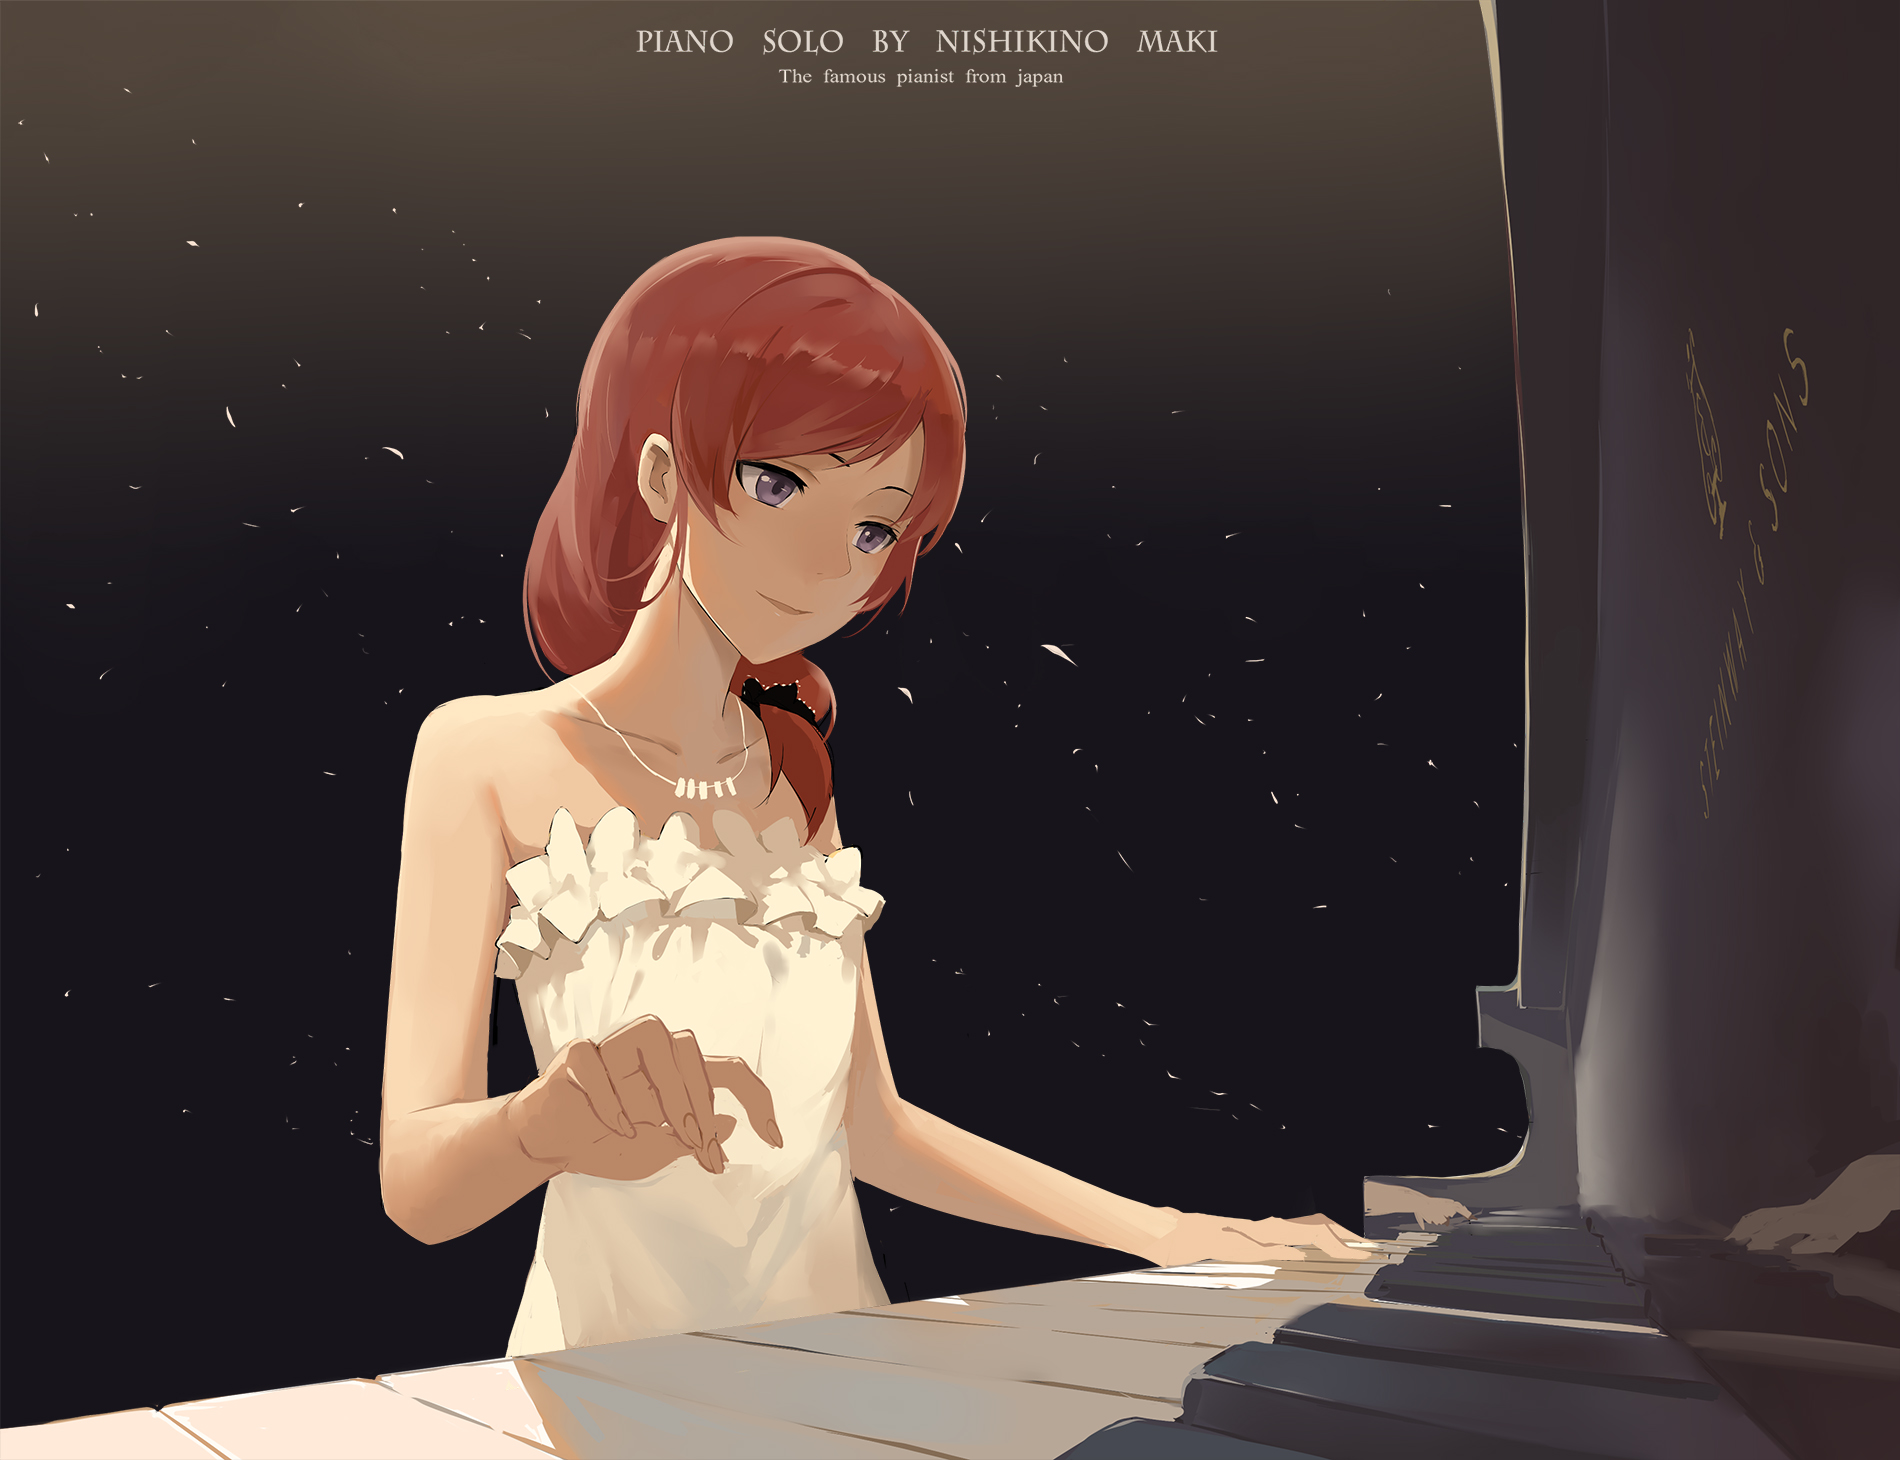 Piano solo by Nishikino Maki